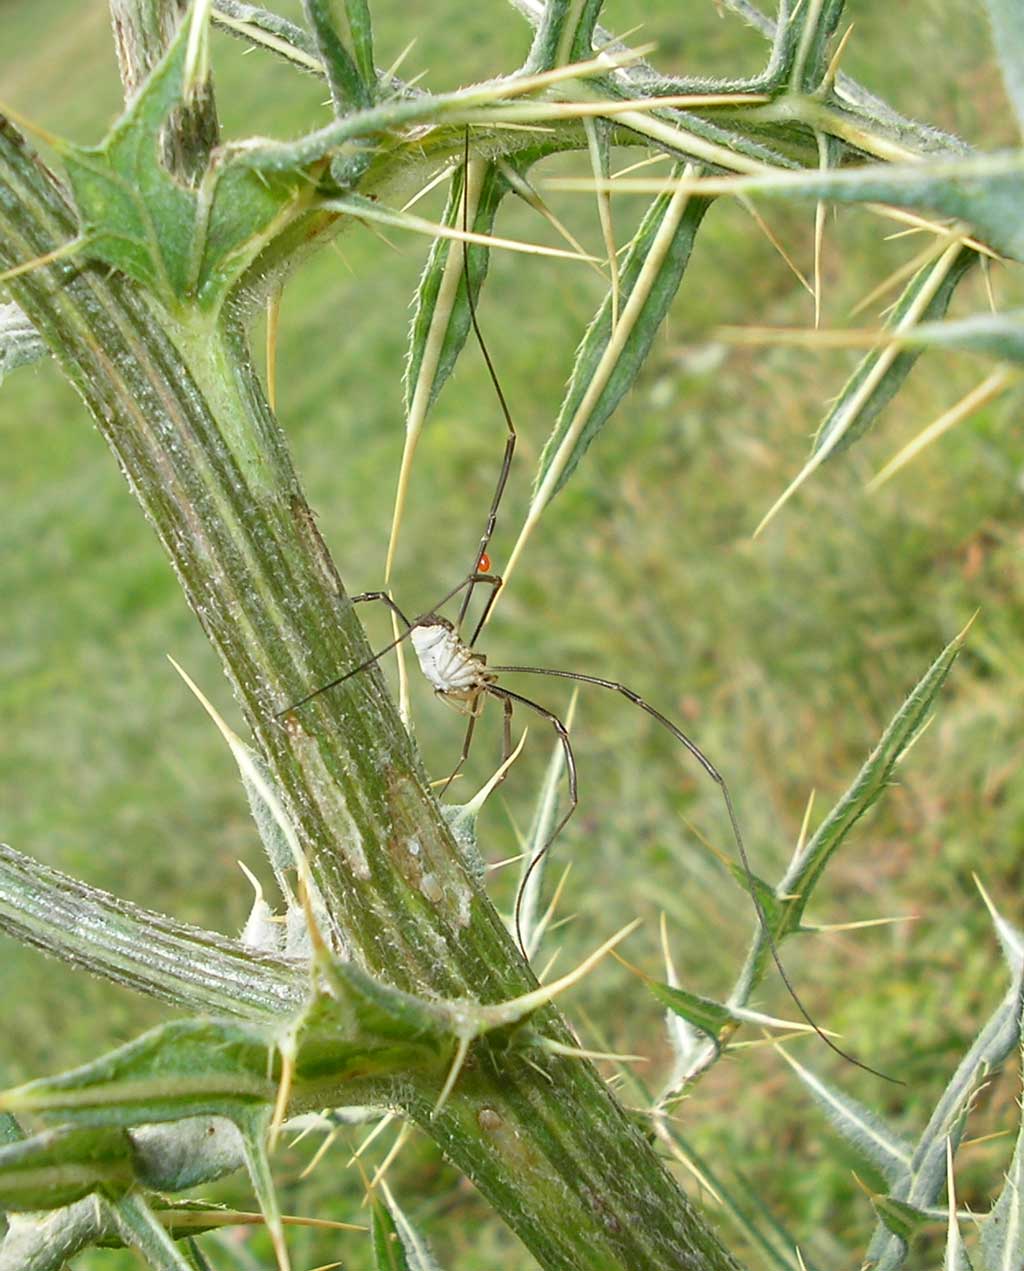 Phalangium opilio parassitato da Leptus della Toscana